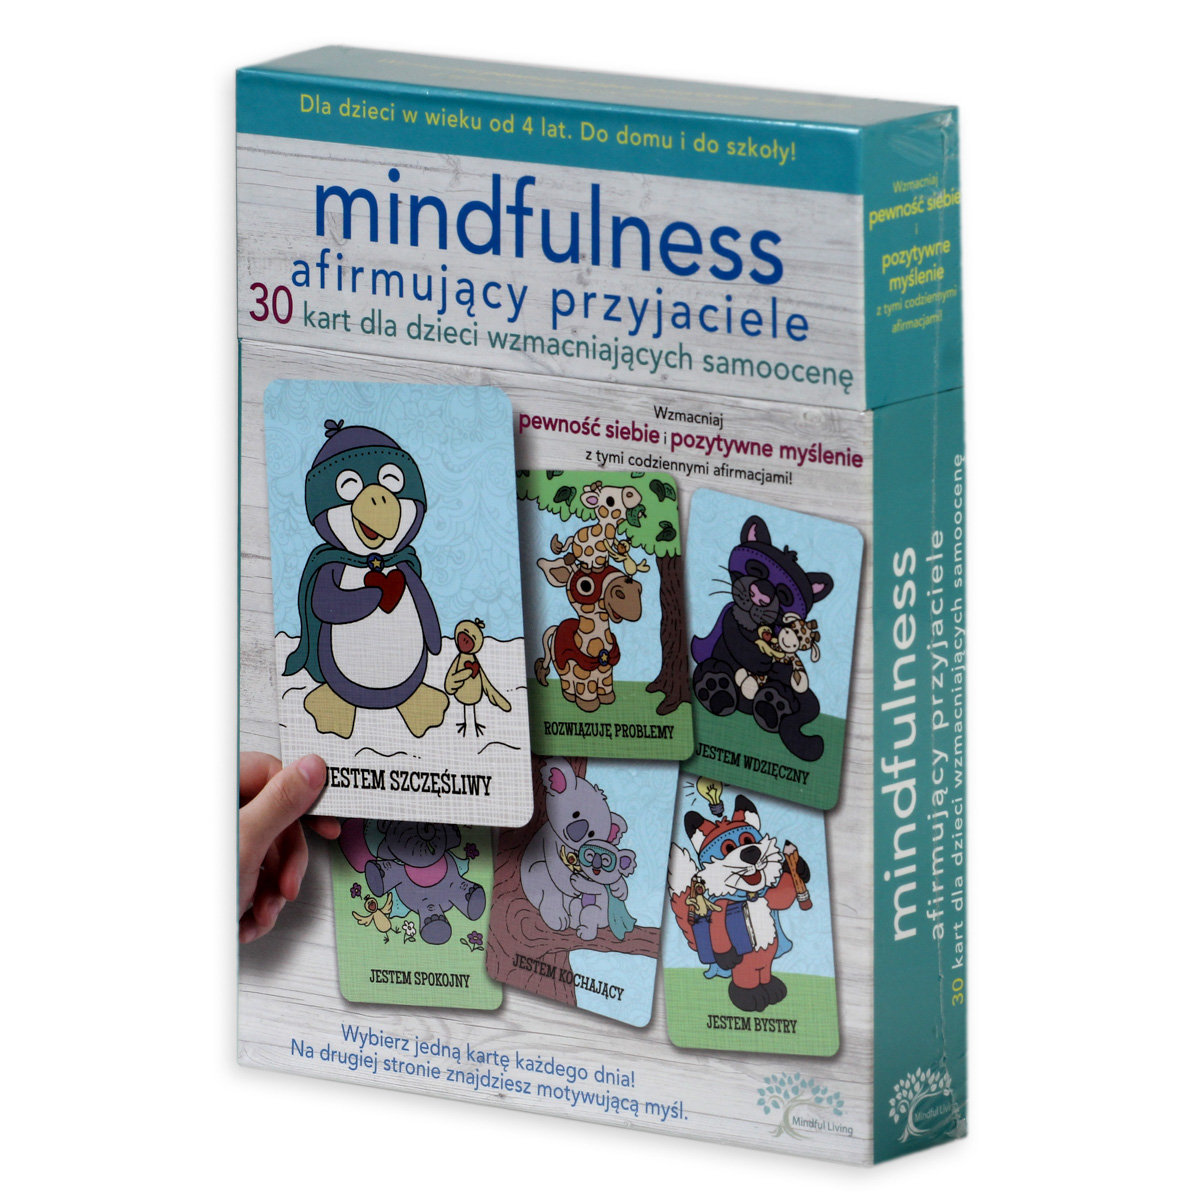 Mindfulness, karty z ćwiczeniami, afirmujący przyjaciele